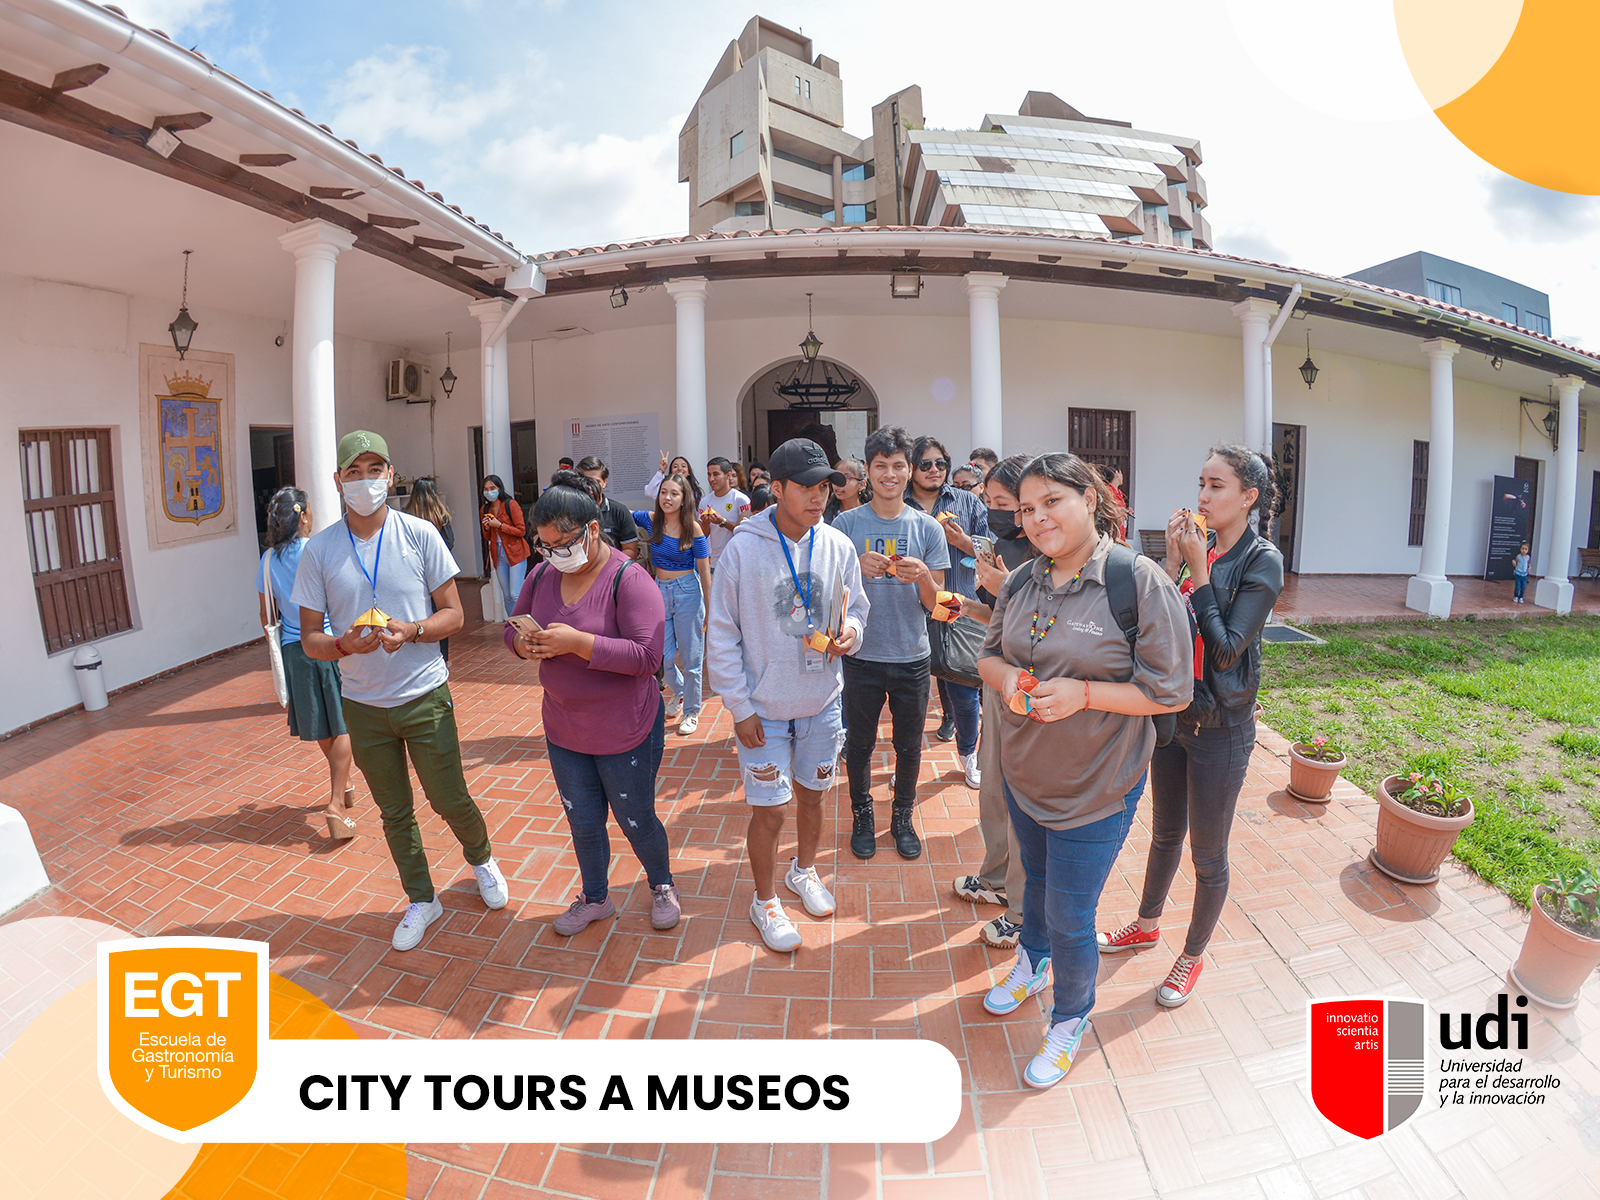 CITY TOURS A MUSEOS